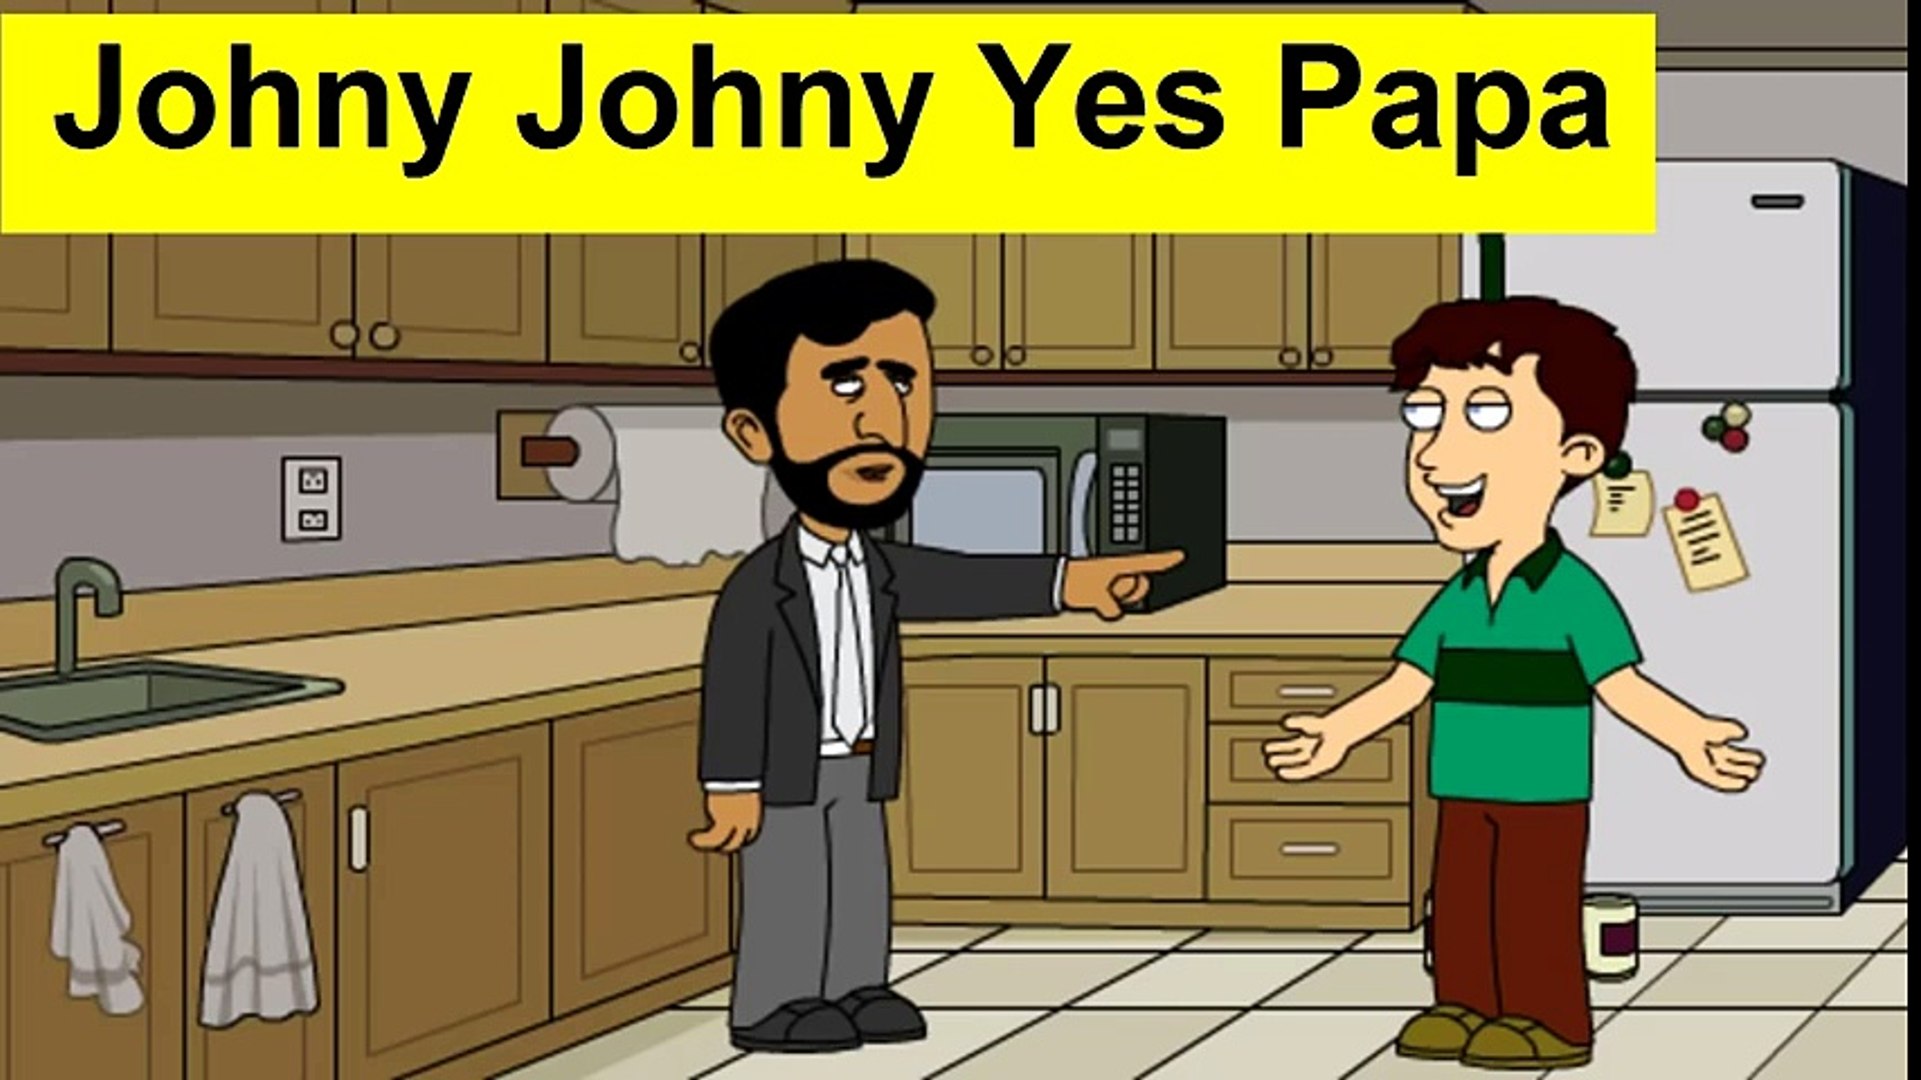 جوني جوني يس بابا - رياض الاطفال Johny Johny Yes Papa - فيديو Dailymotion